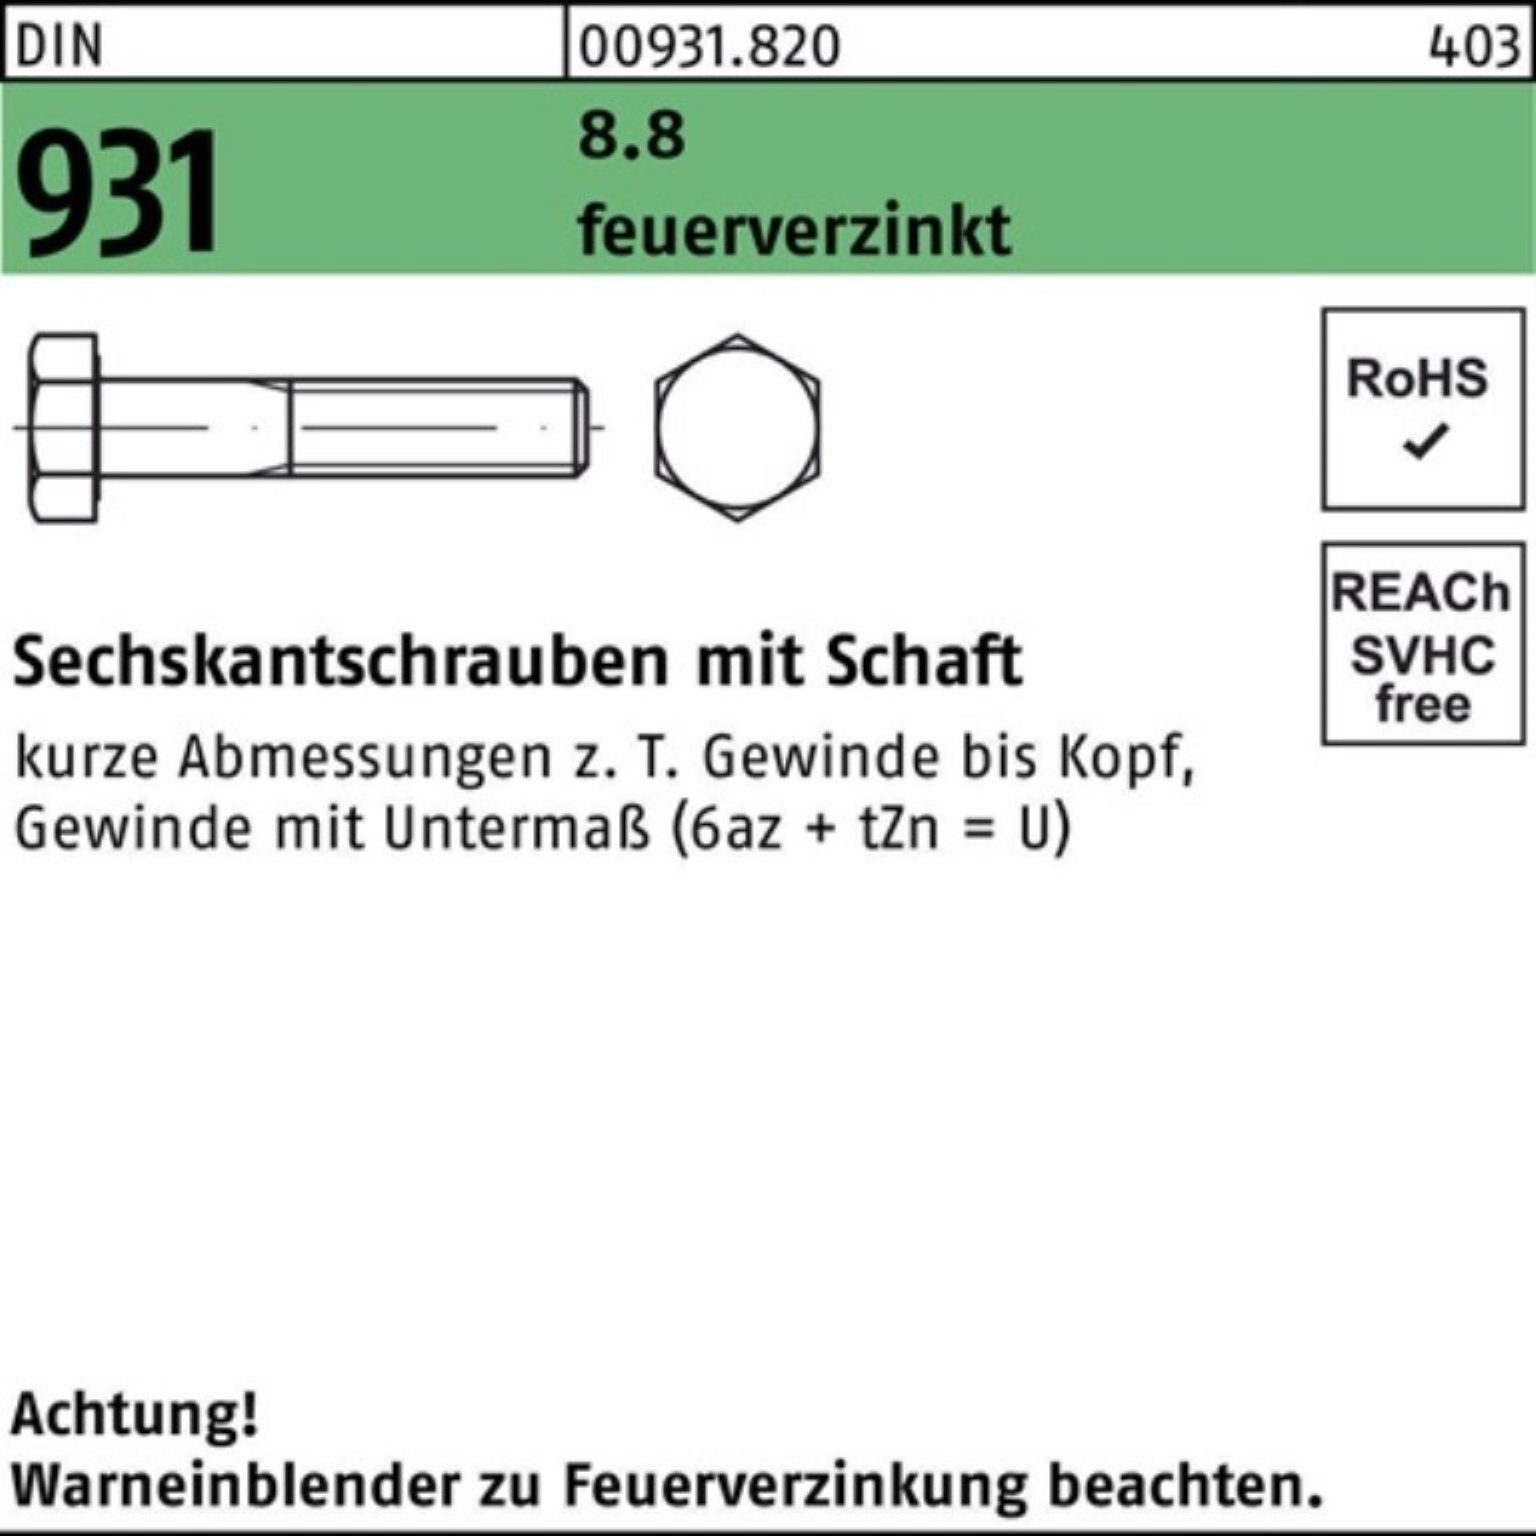 M33x 8.8 Pack 931 DIN Reyher Sechskantschraube Sechskantschraube Schaft 100er 140 feuerverz. 1